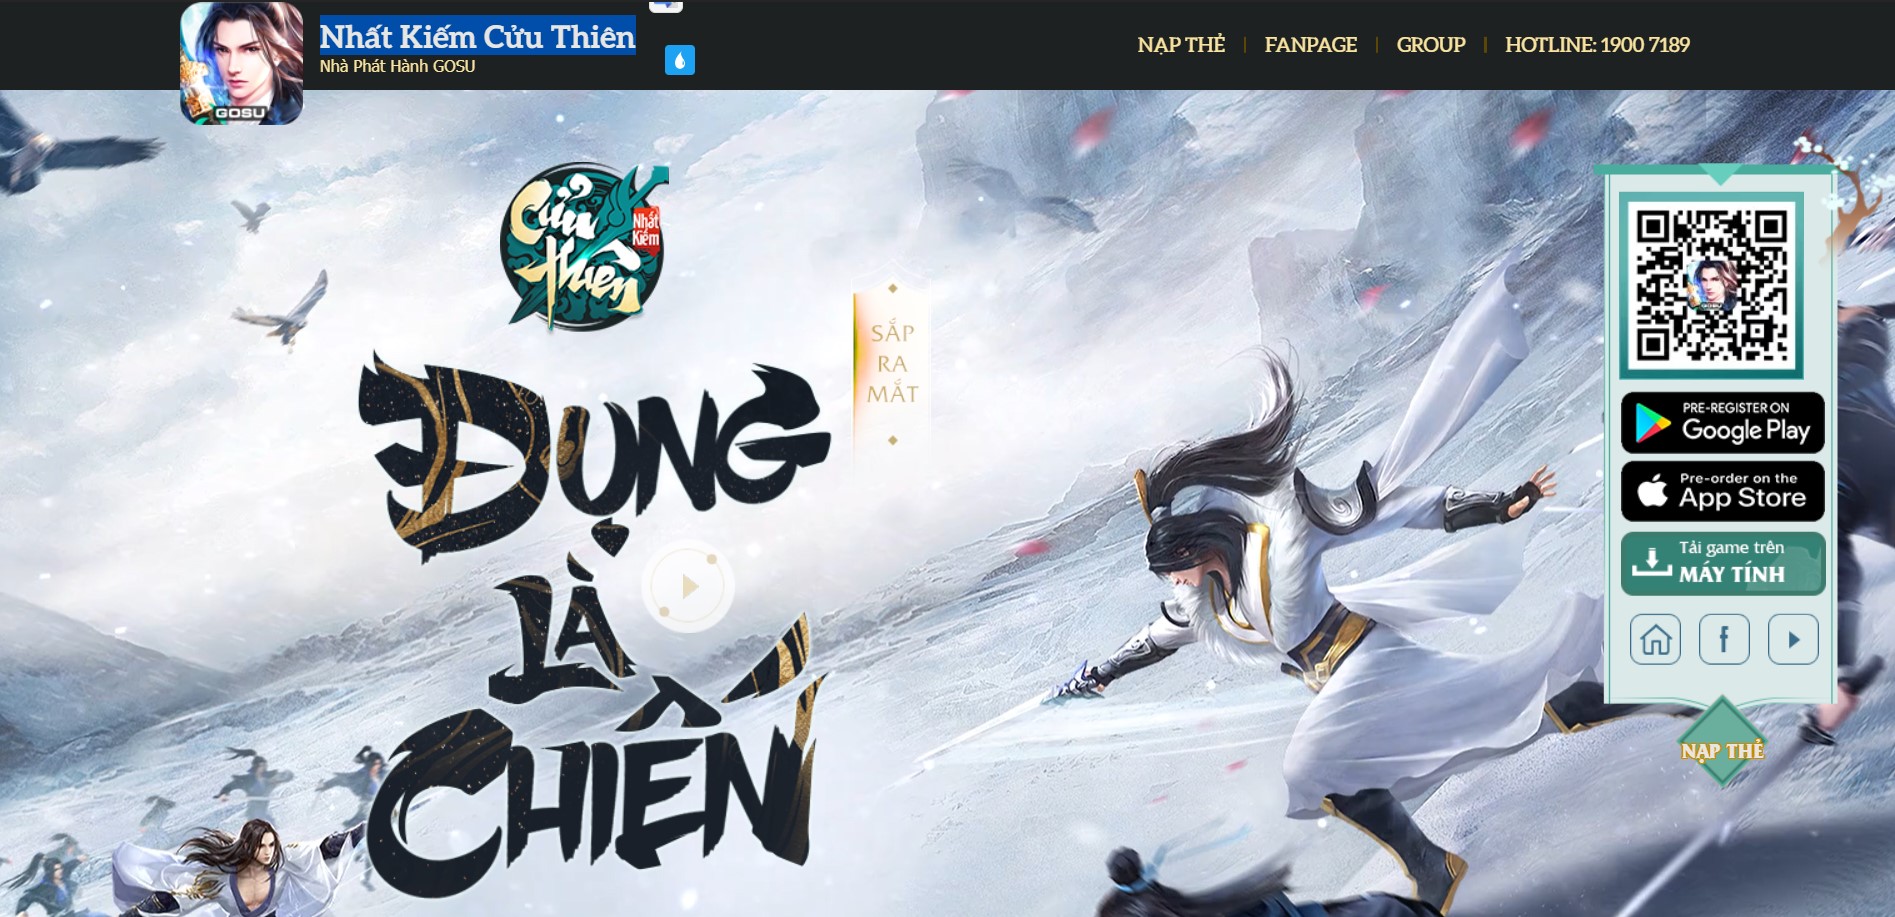 Tựa game Nhất Kiếm Cửu Thiên sẽ được GOSU đưa đến tay game thủ Việt trong tháng 02/2021